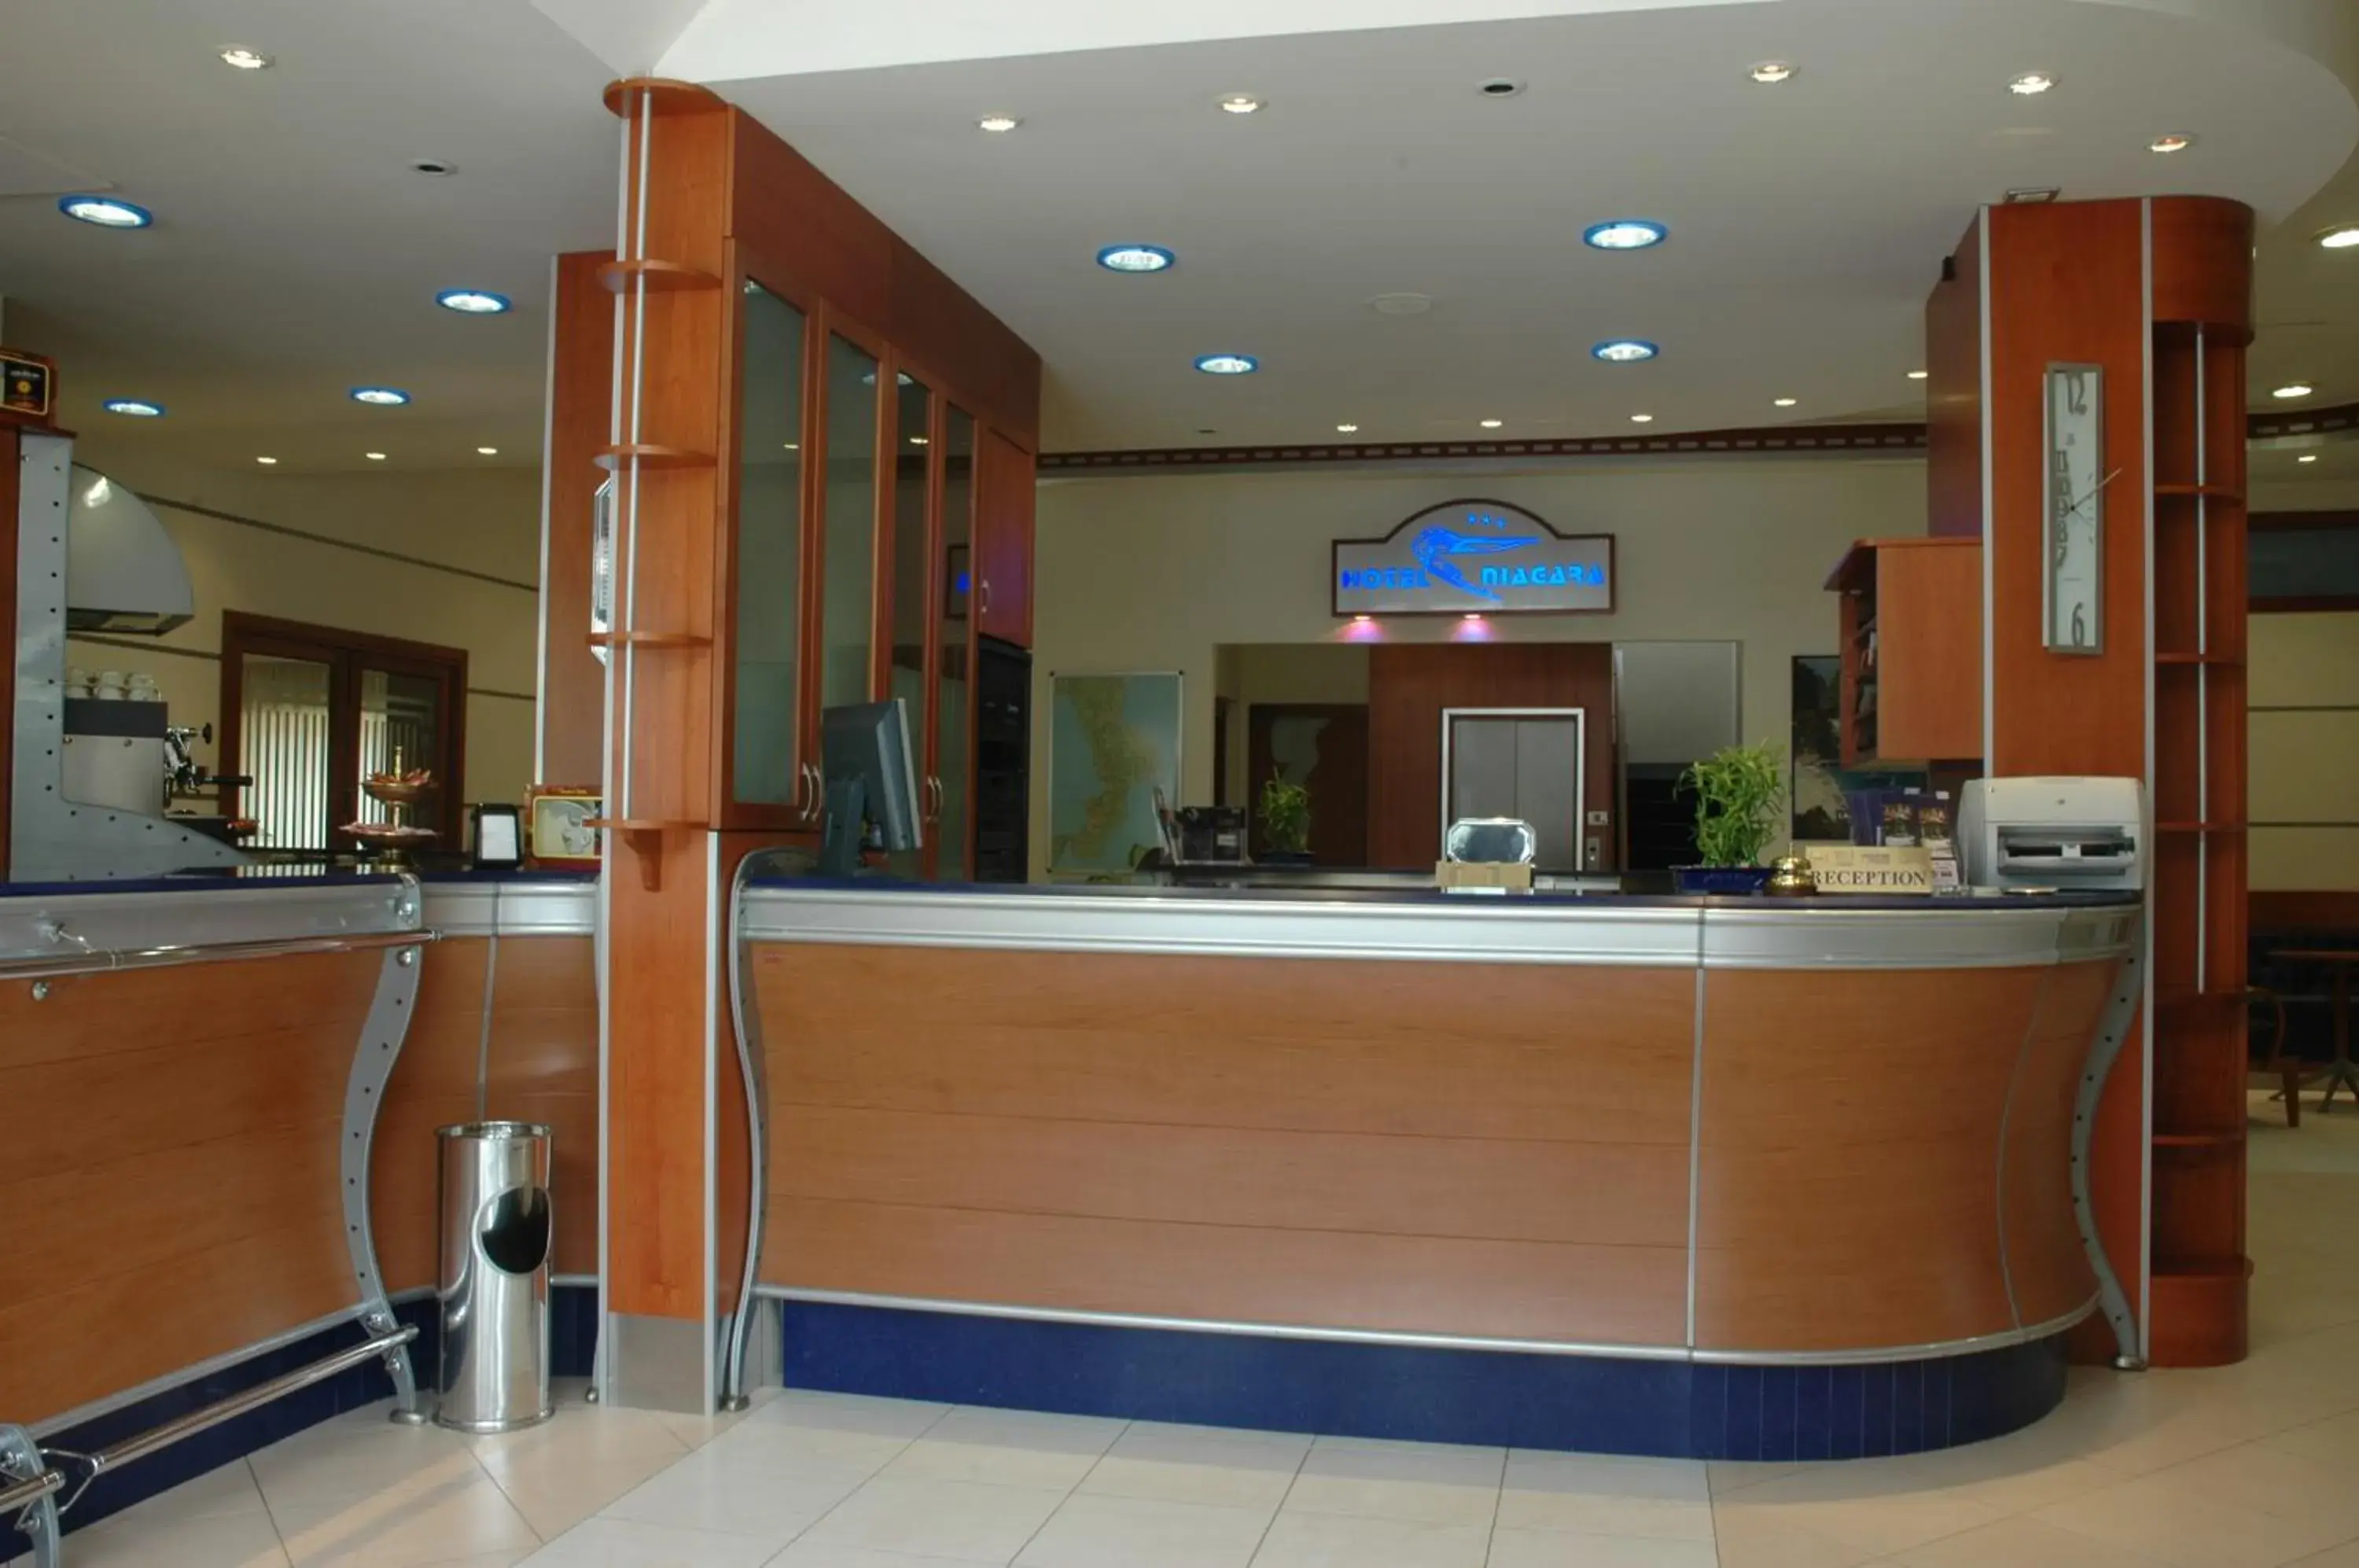 Lobby or reception, Lobby/Reception in Hotel Niagara